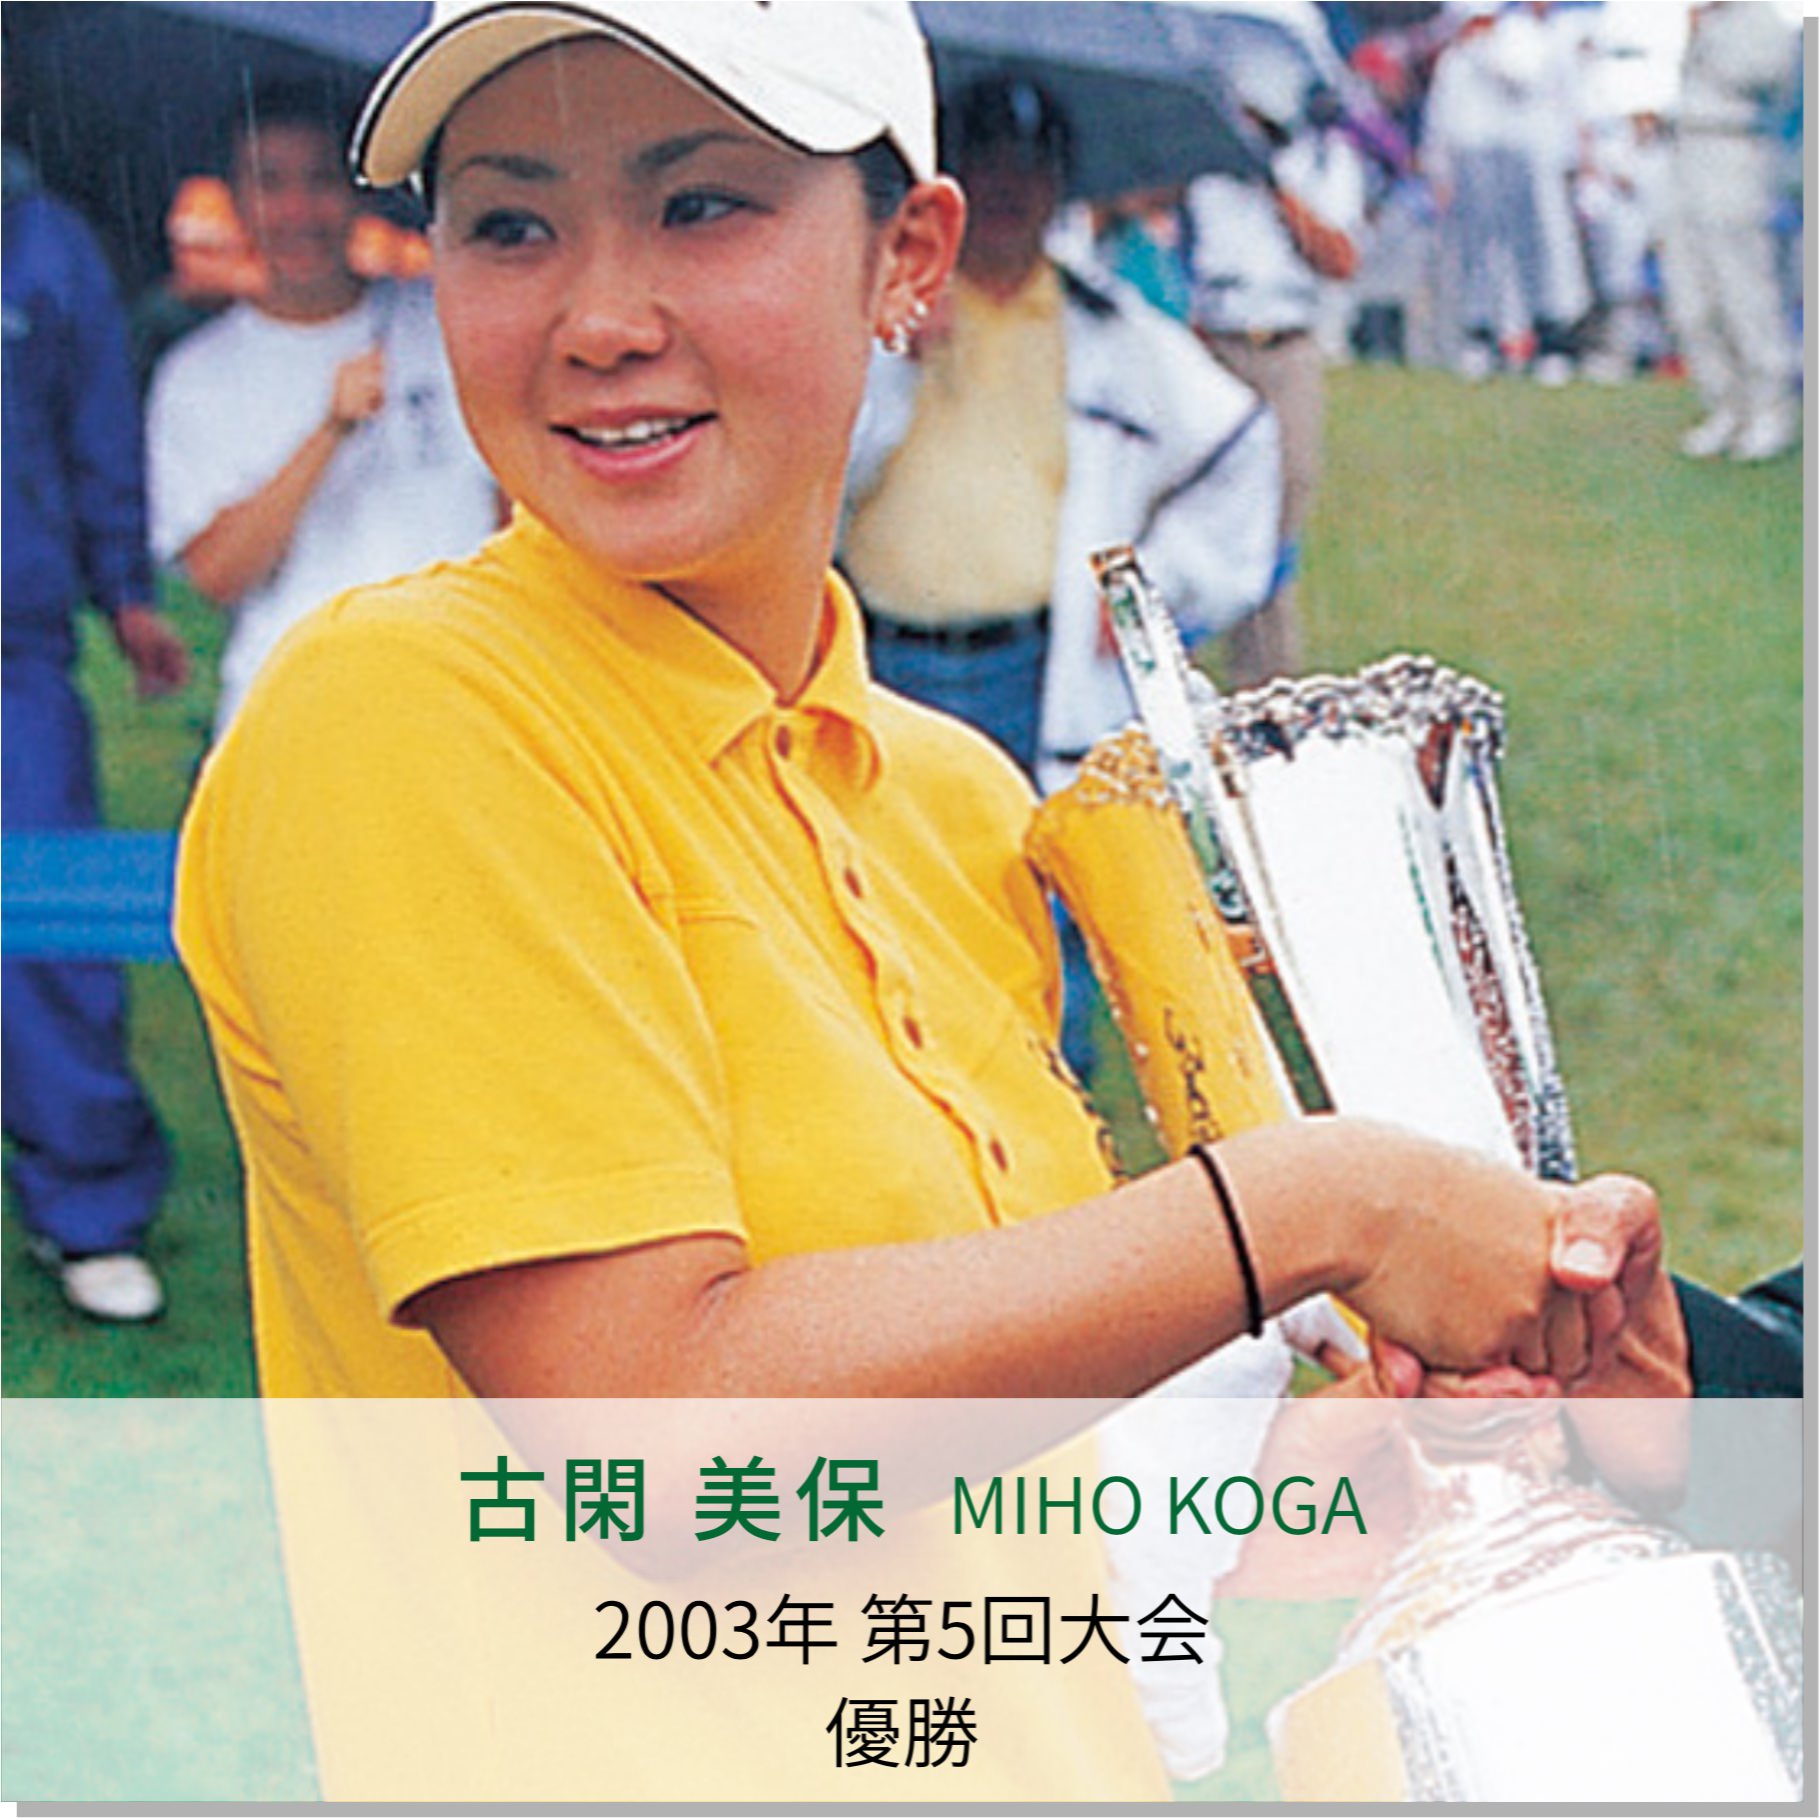 2003年、ヨネックスレディスゴルフトーナメントで初優勝